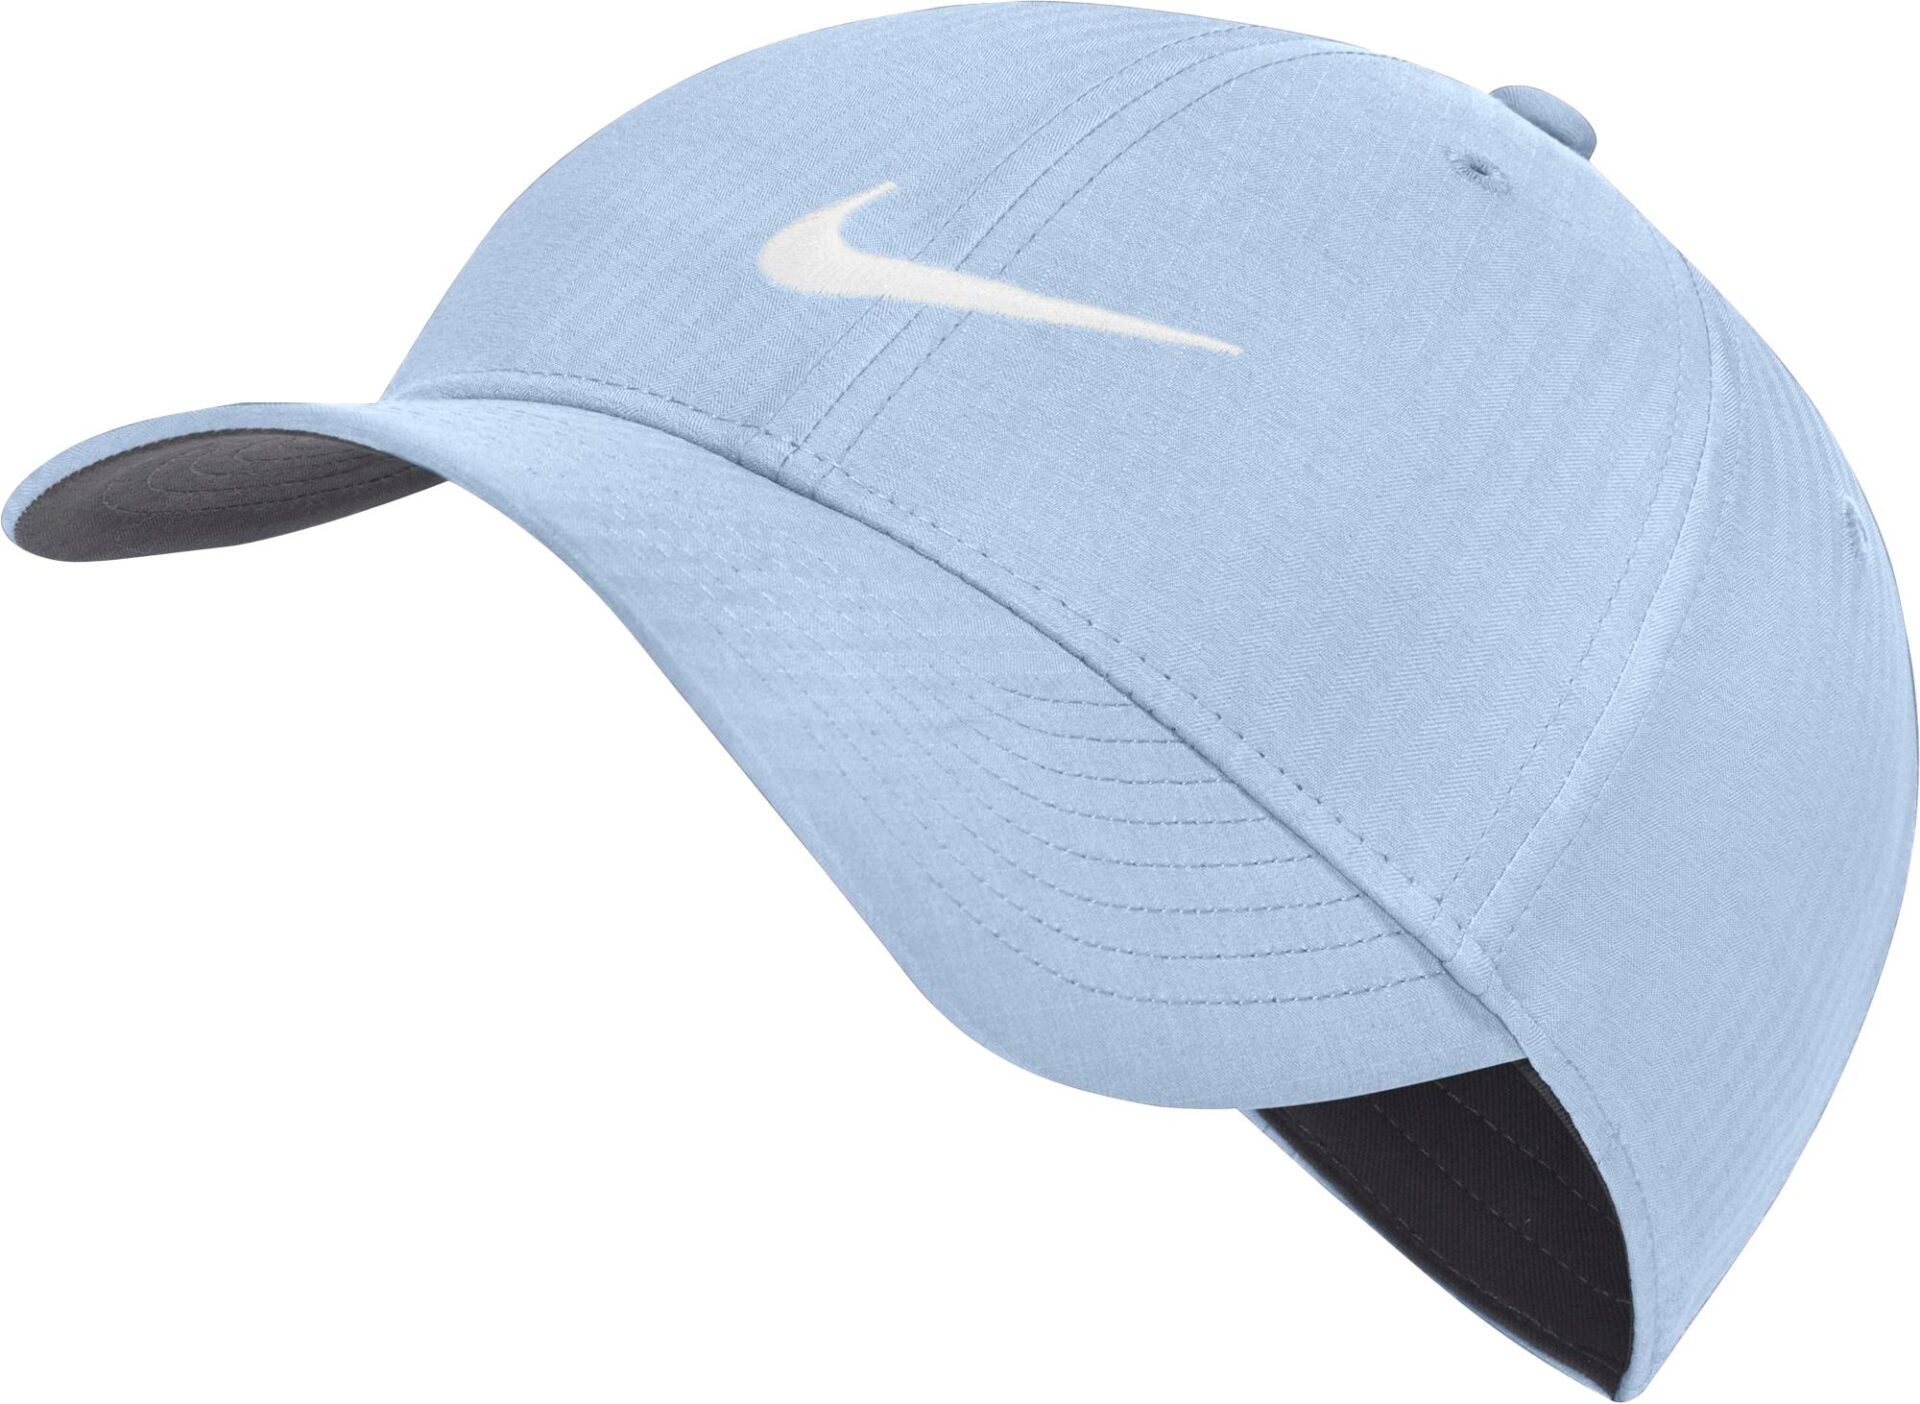 Nike Legacy91 Golf Hat.